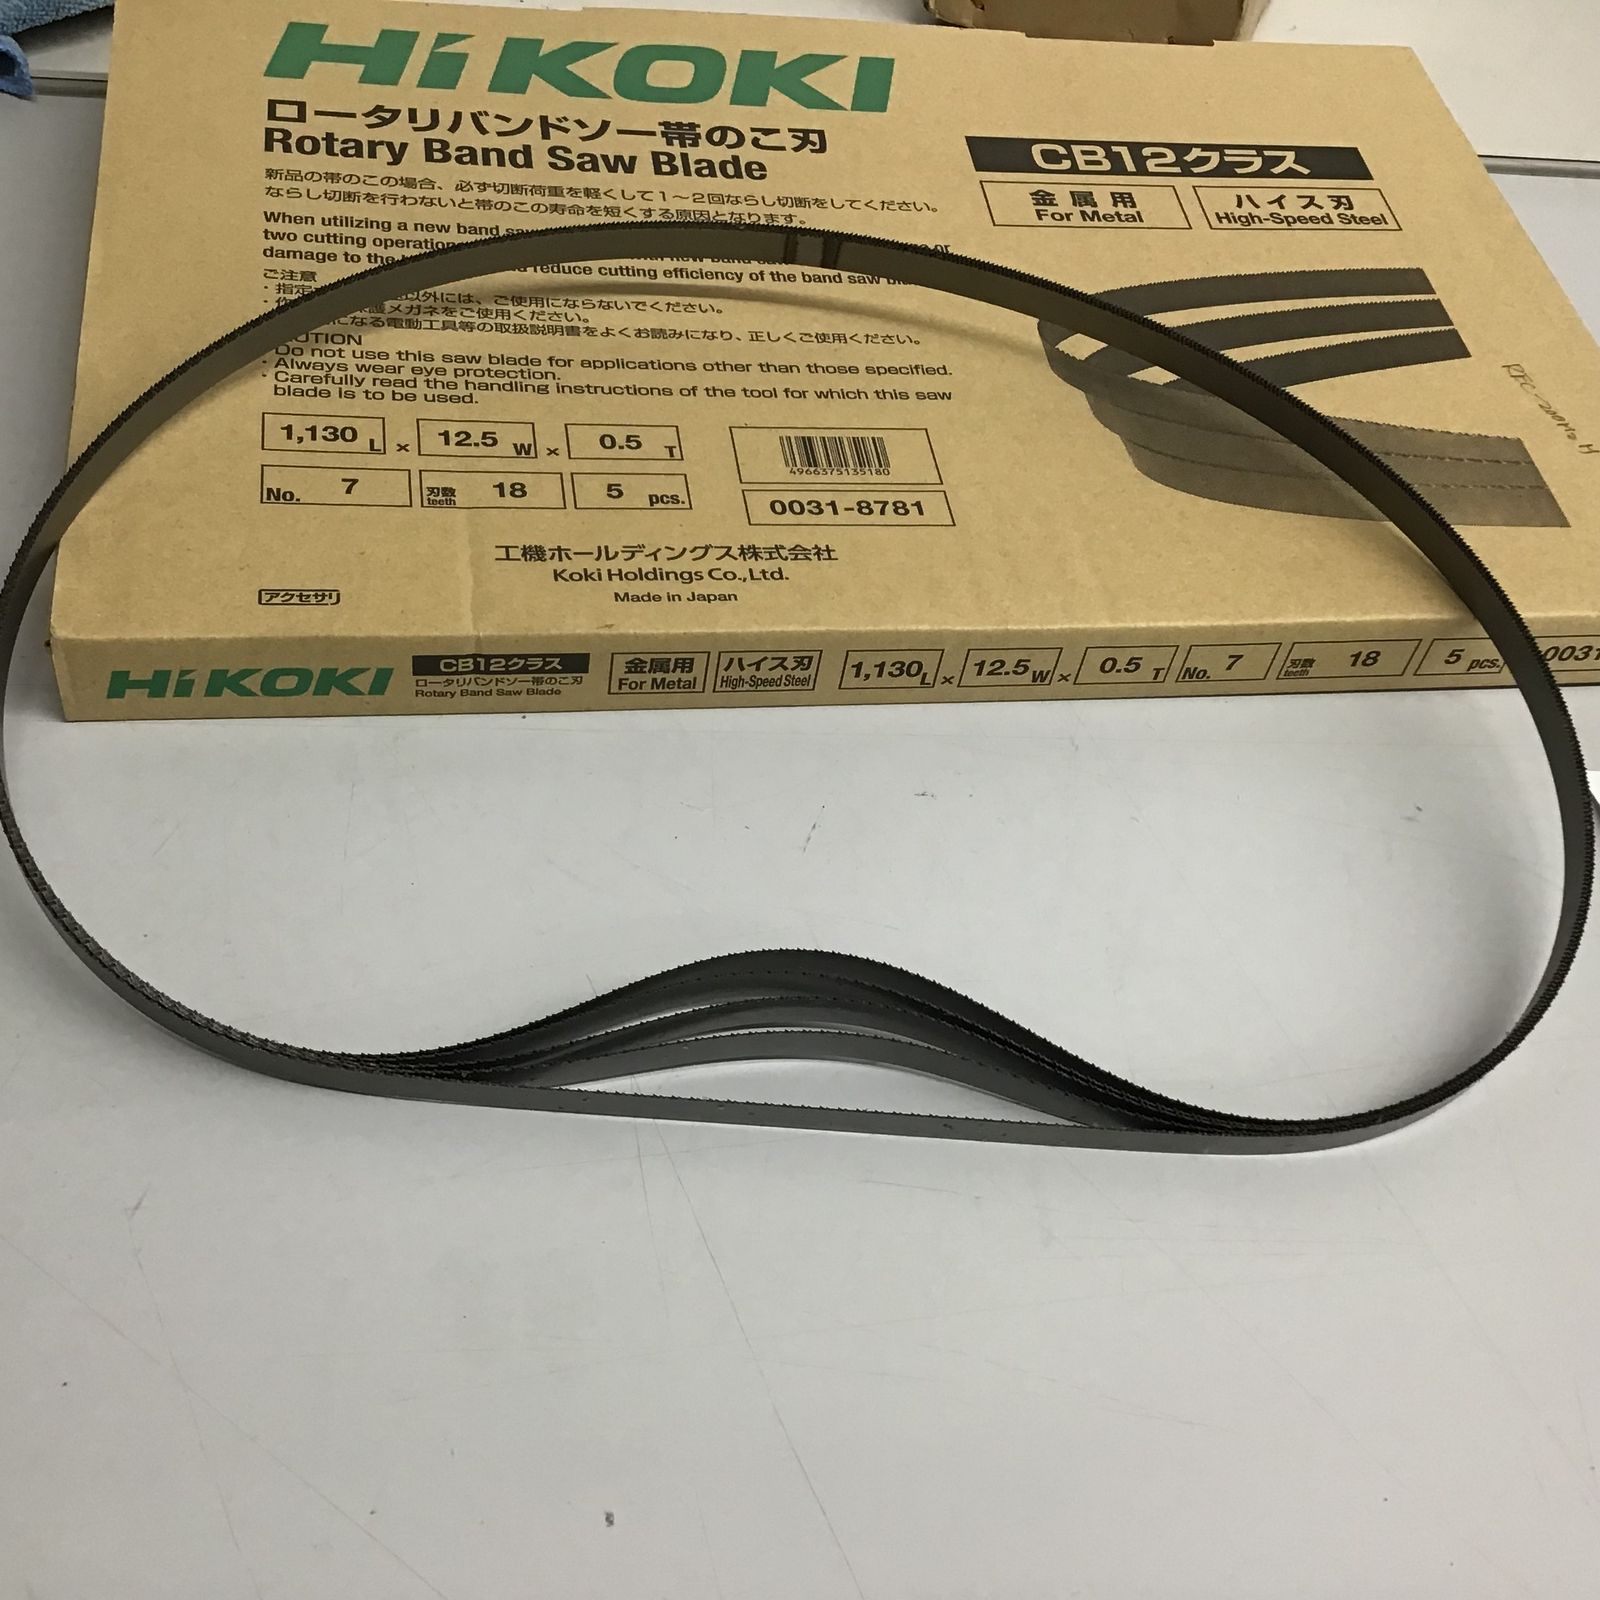 HiKOKI(ハイコーキ) 帯のこ刃 NO.7 18山 (ハイス) (5入) 0031-8781